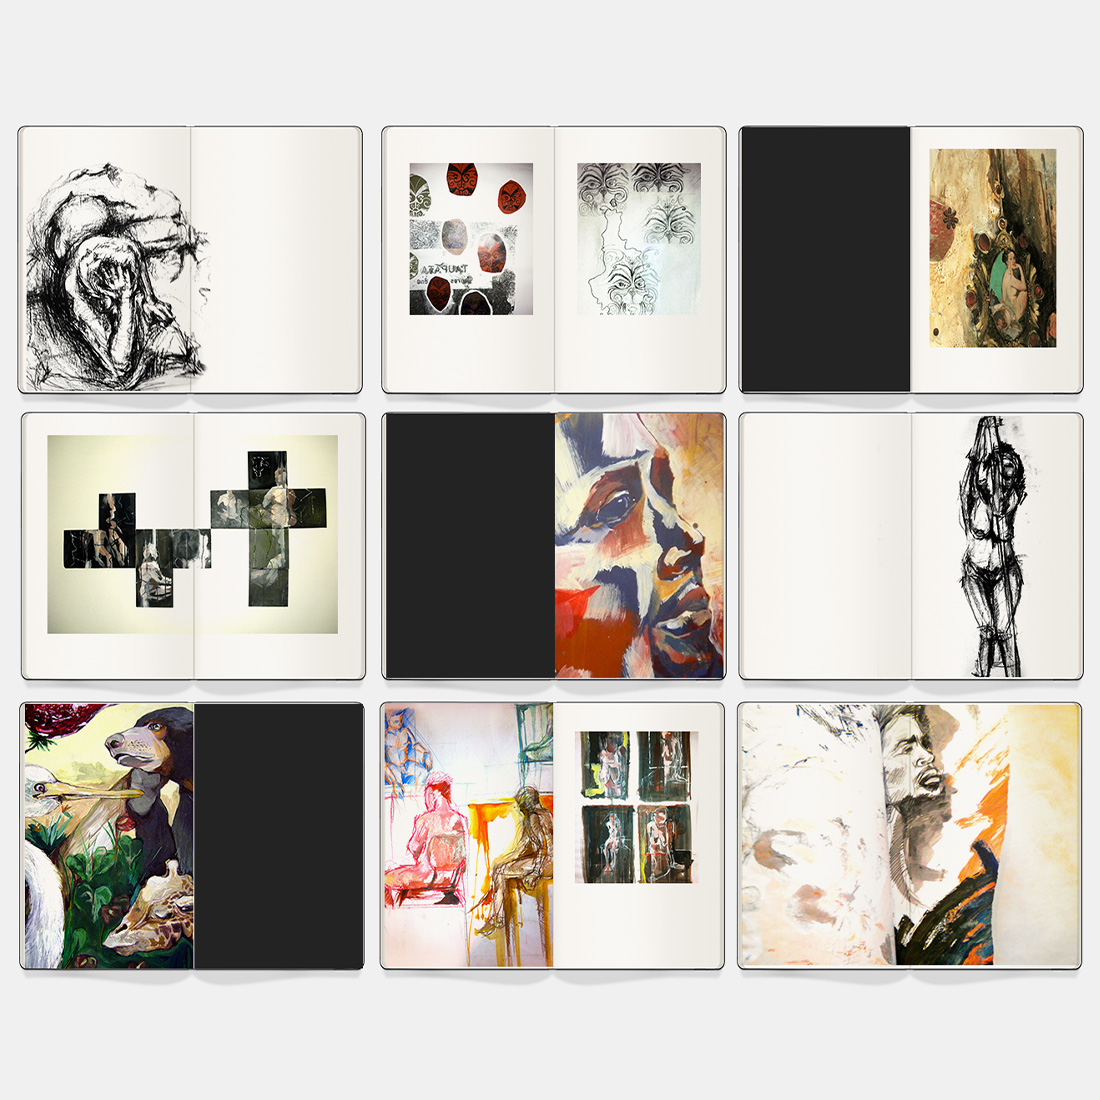 Nueve álbumes de fotos Moleskine diferentes con arte abstracto.